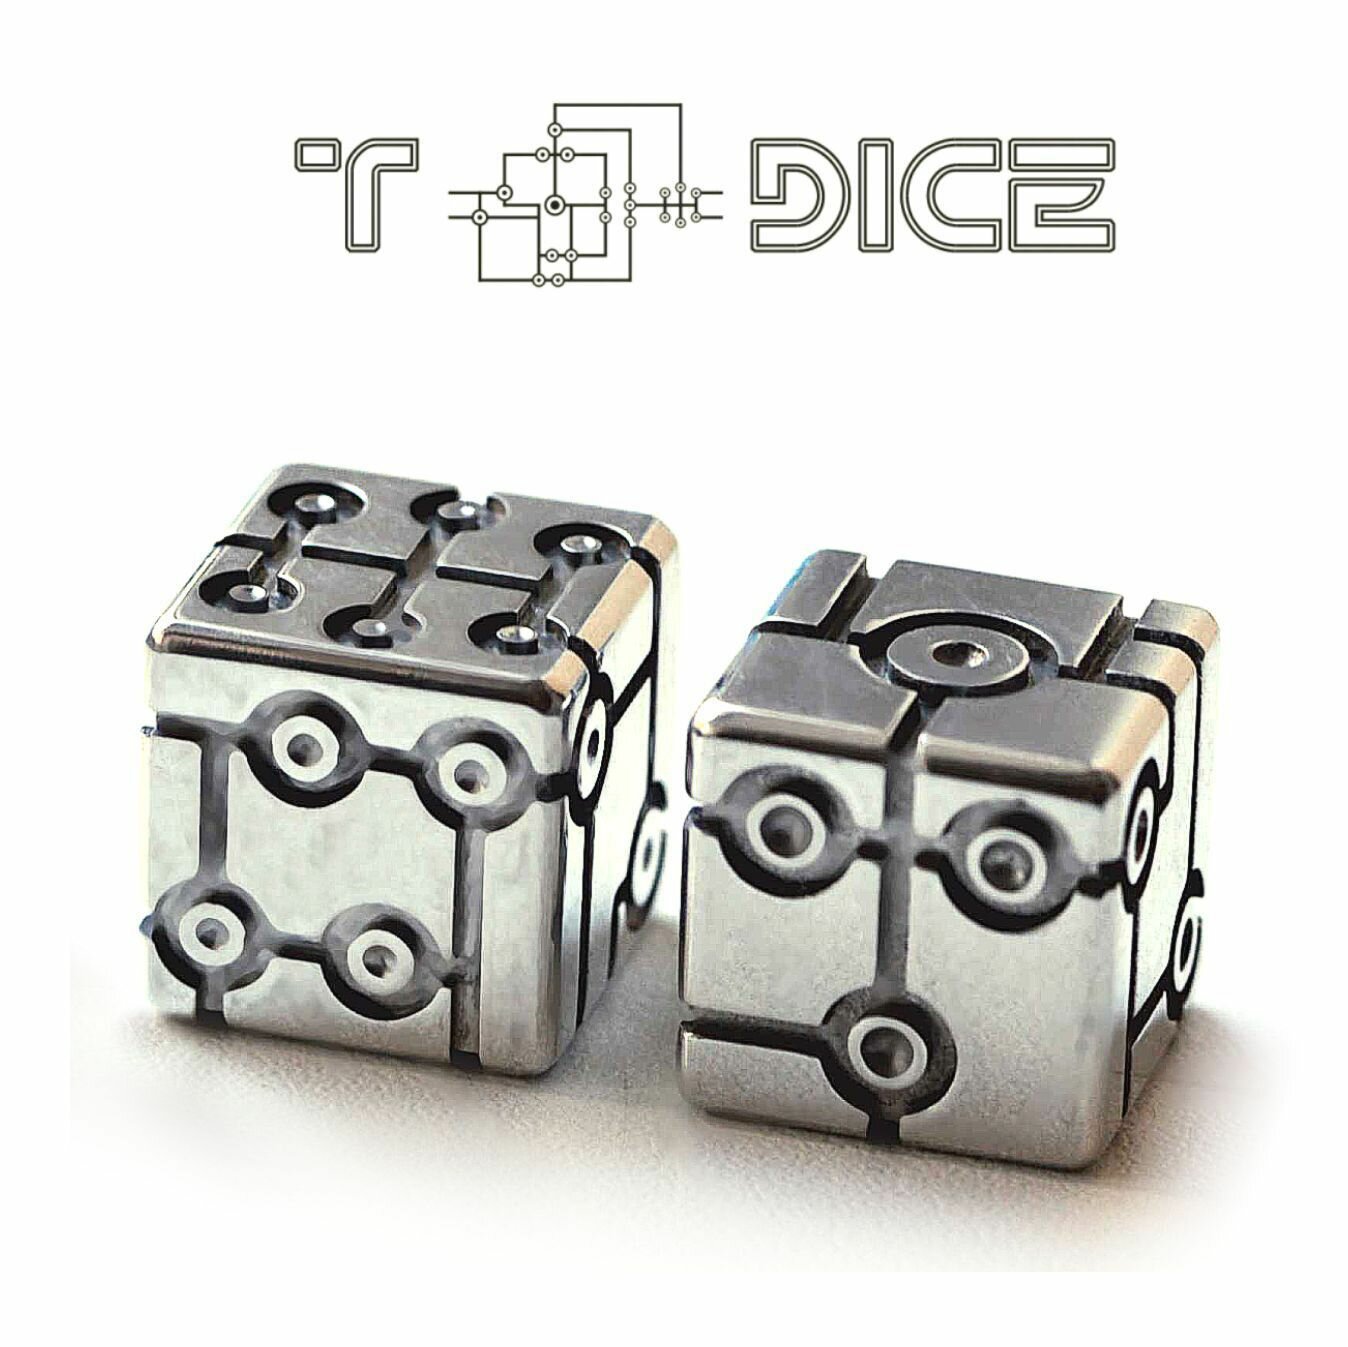 Tron Dice металлические игральные кубики D6 / Матовая полировка, дизайн от April GS. Дизайнерские кости 2 шт, размер 16мм, дайсы Dungeons & Dragons для настольных ролевых игр ДнД